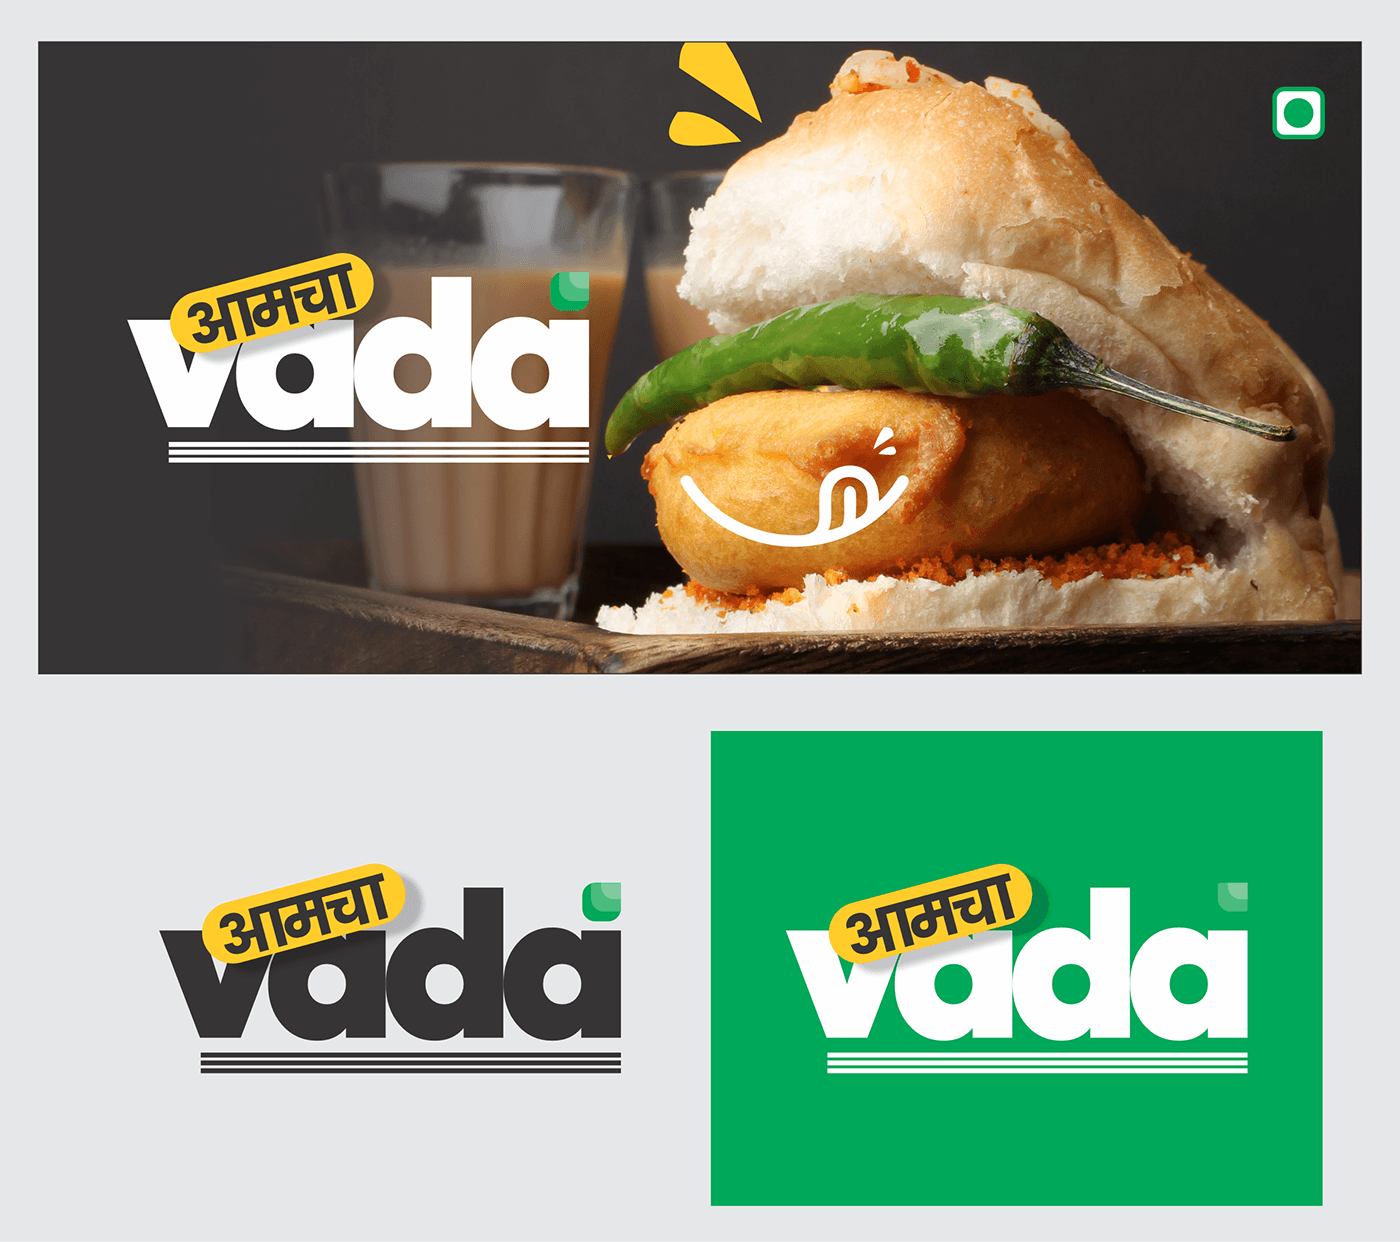 Logo Design Food  brand identity design Social media post marketing   Advertising  chiken trend minimal